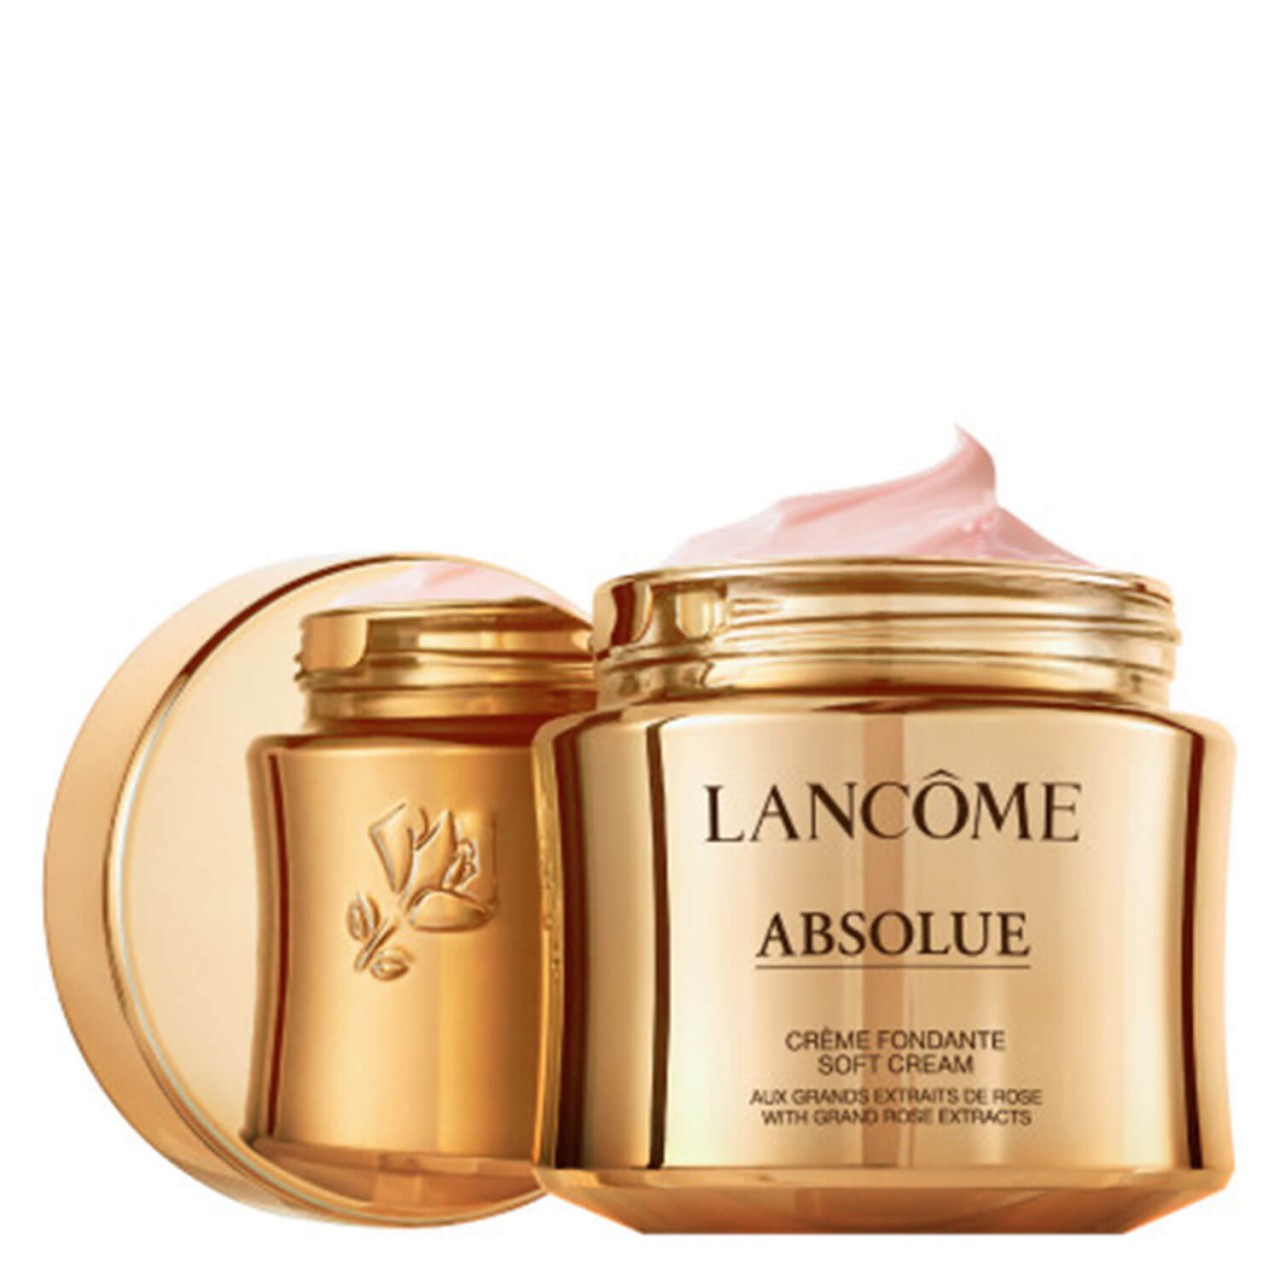 ABSOLUE - Soft Cream von Lancôme